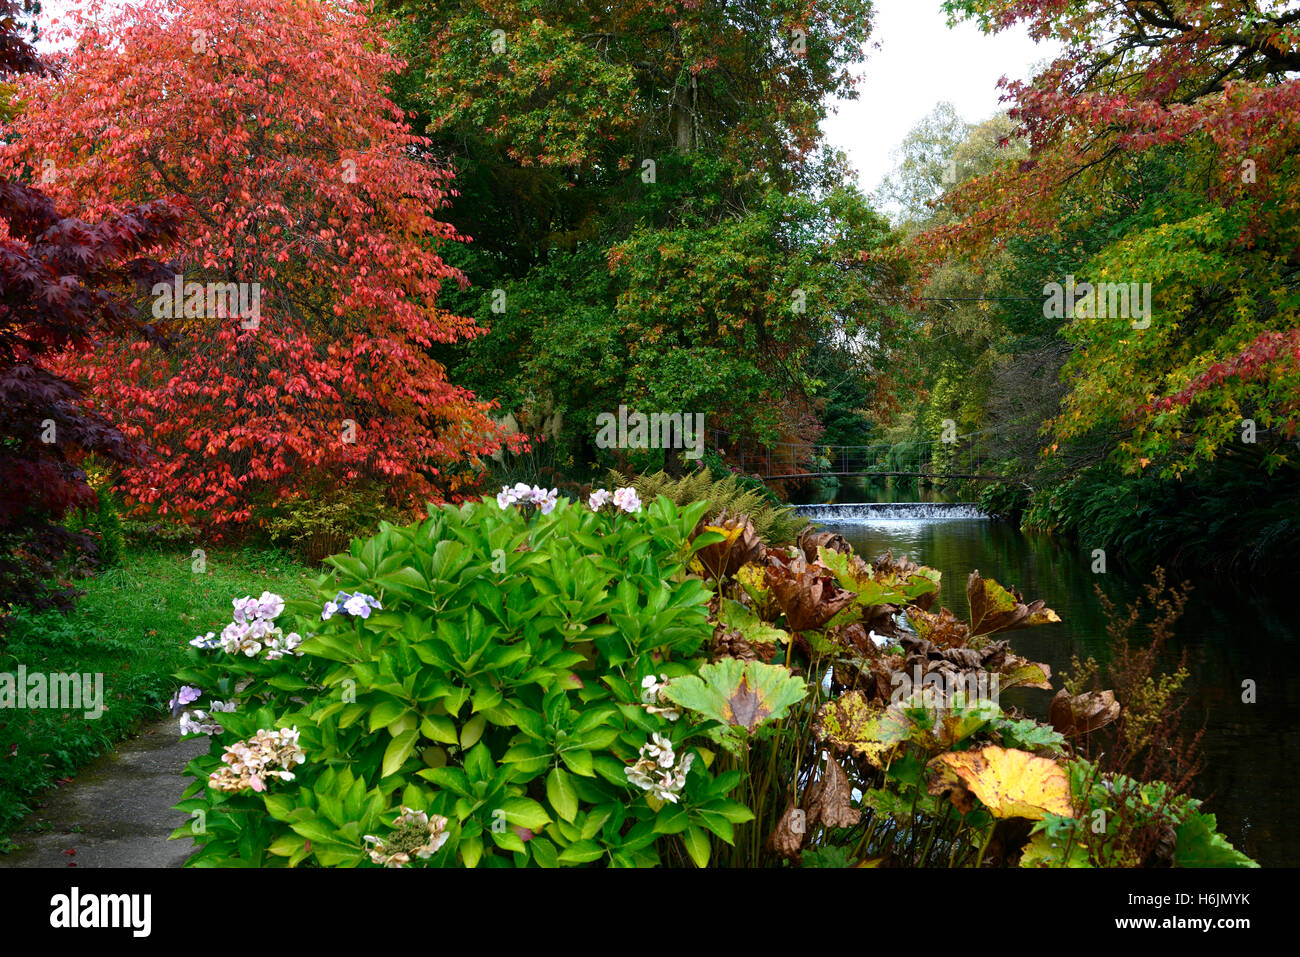 Acer Baum Bäume Rotes Laub Laub im Herbst herbstliche Farbe Farben Änderung Mount Usher Gardens RM Floral Stockfoto